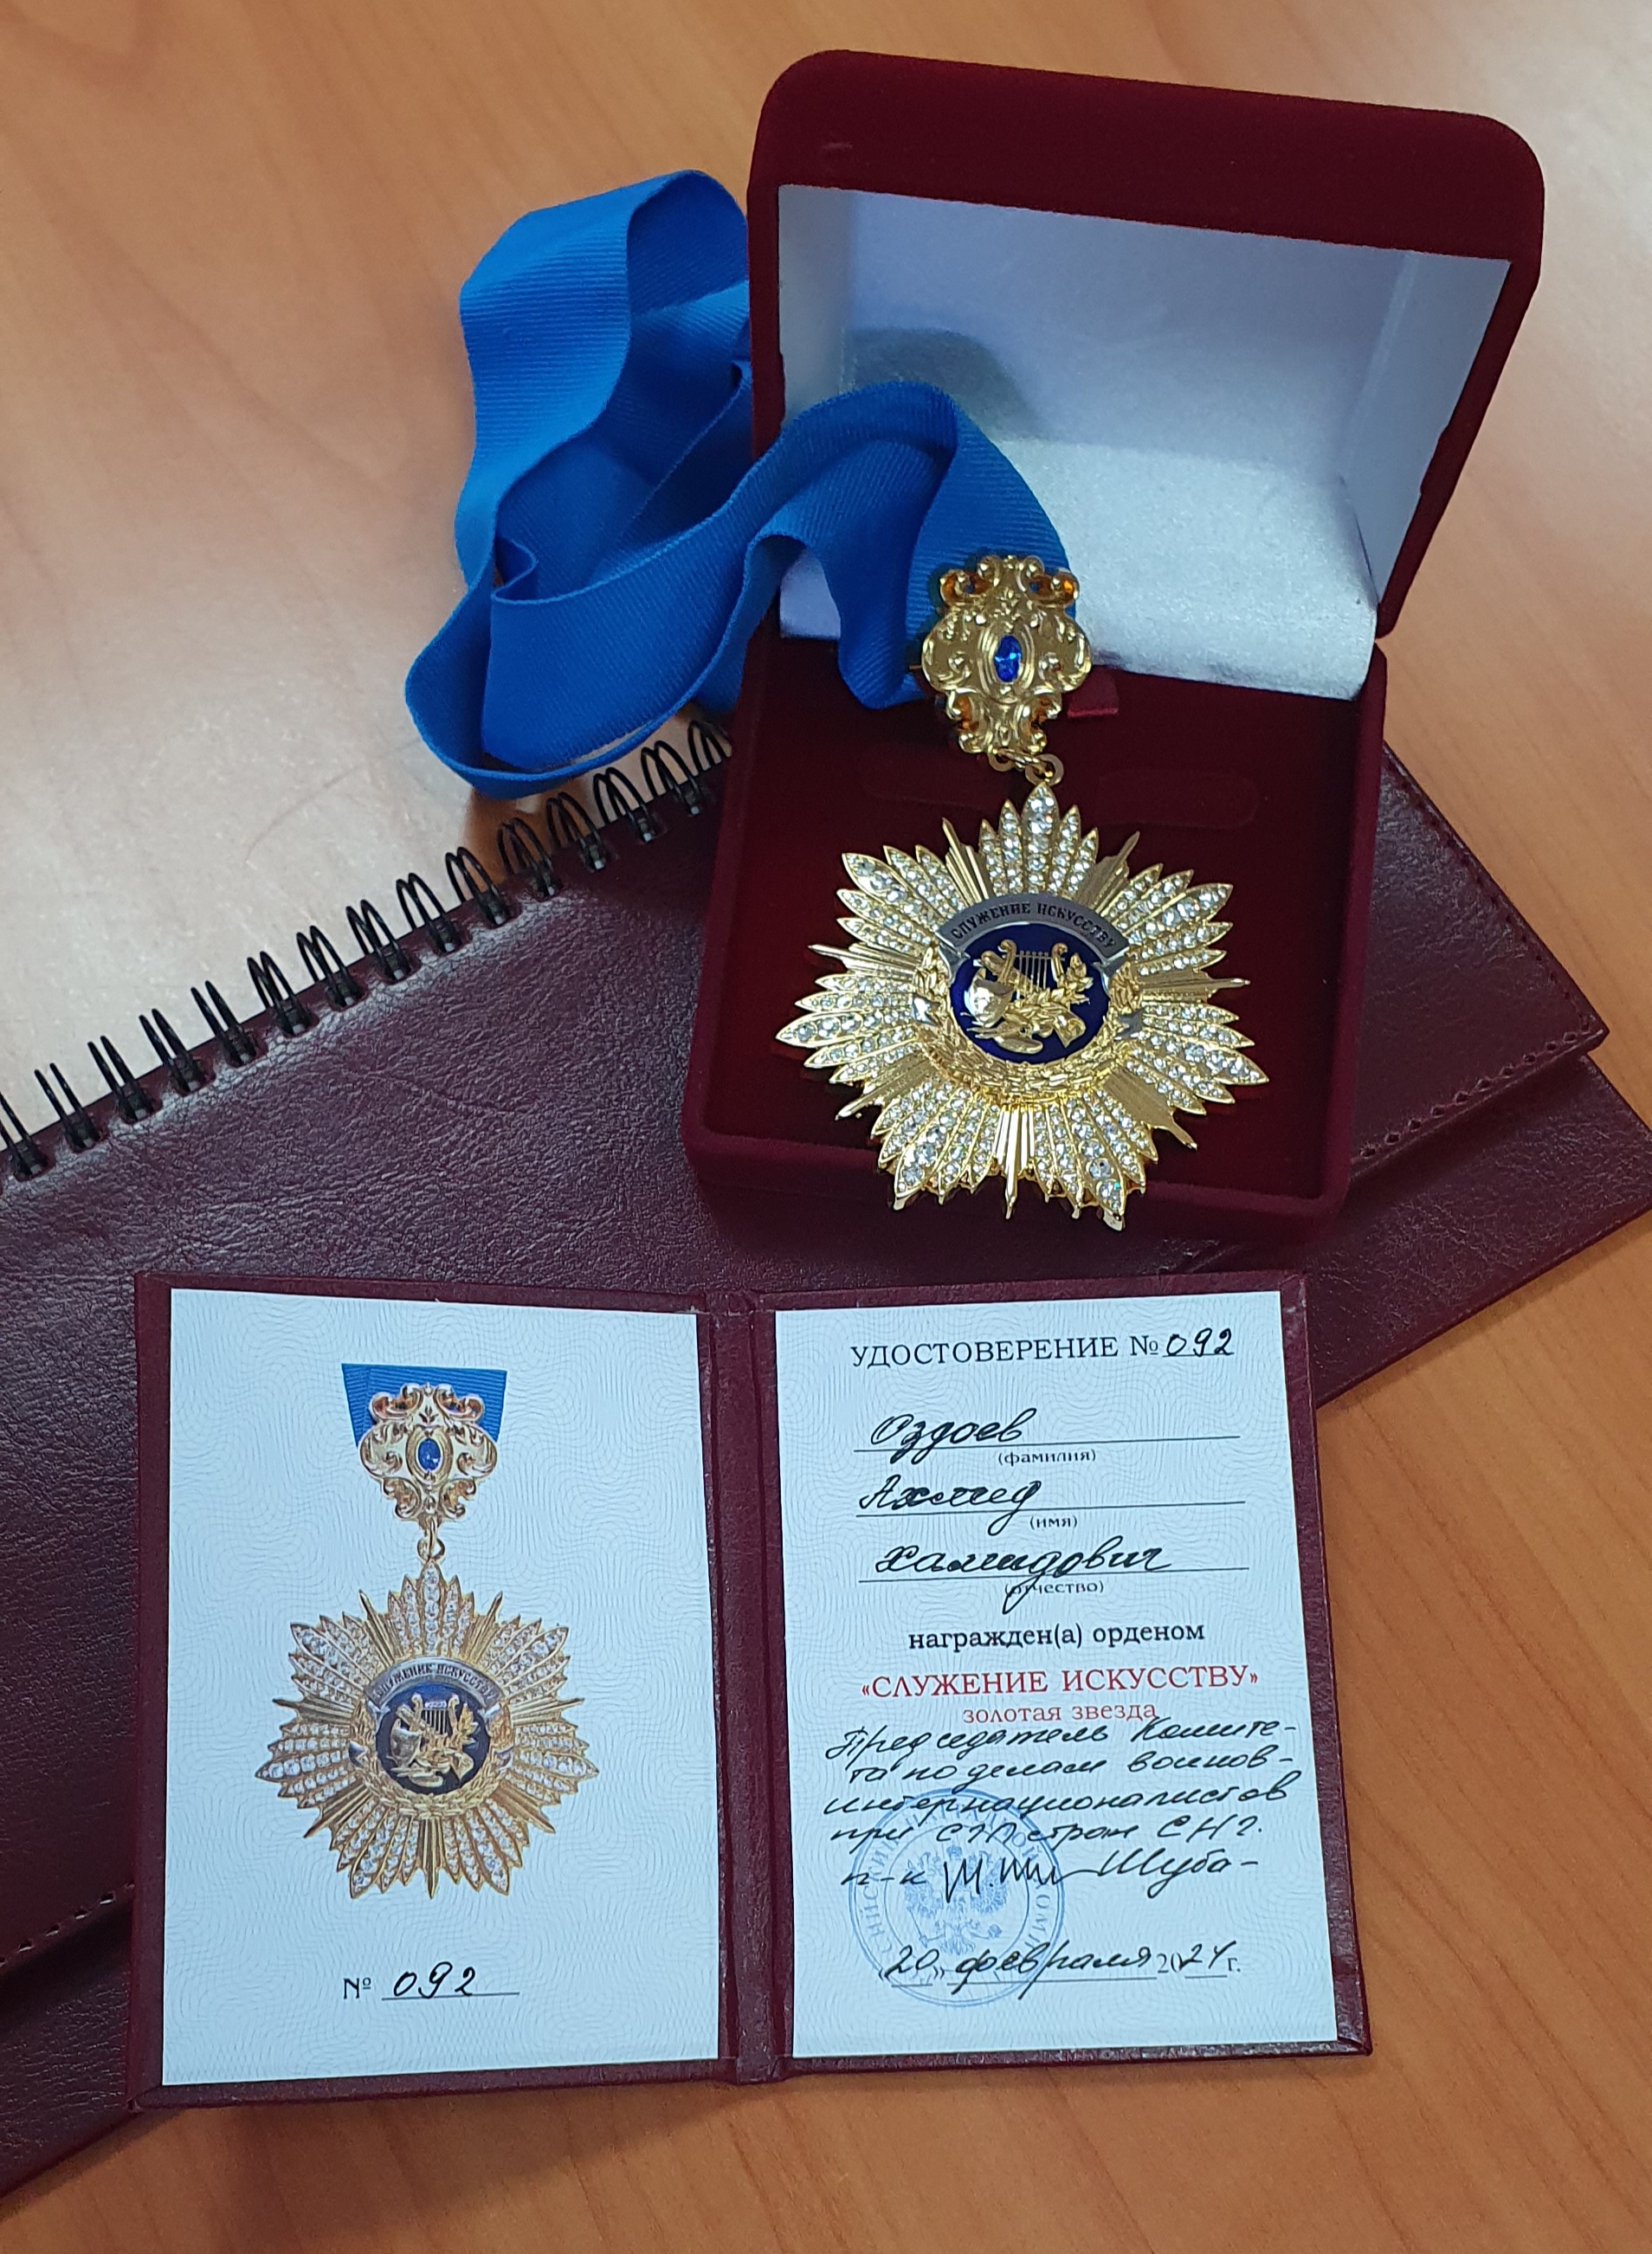 Директор ансамбля «Магас» Оздоев Ахмед награжден орденом «Служение искусству» (Золотая звезда»).